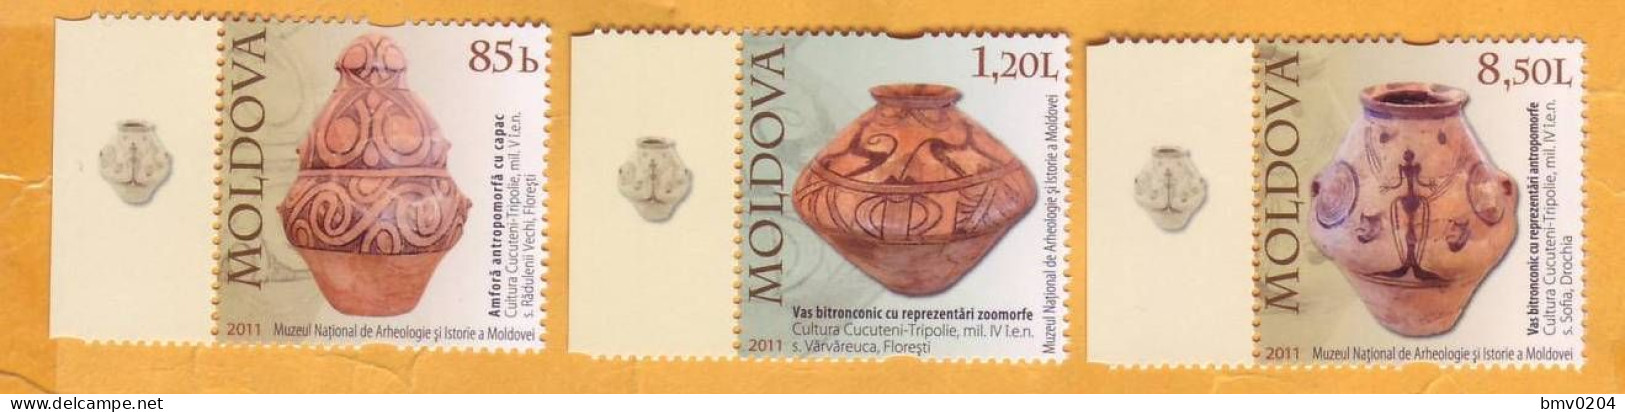 2011 Moldova Moldavie  National Museum, Archeology, Amphora, Vase, 3v Mint - Moldova